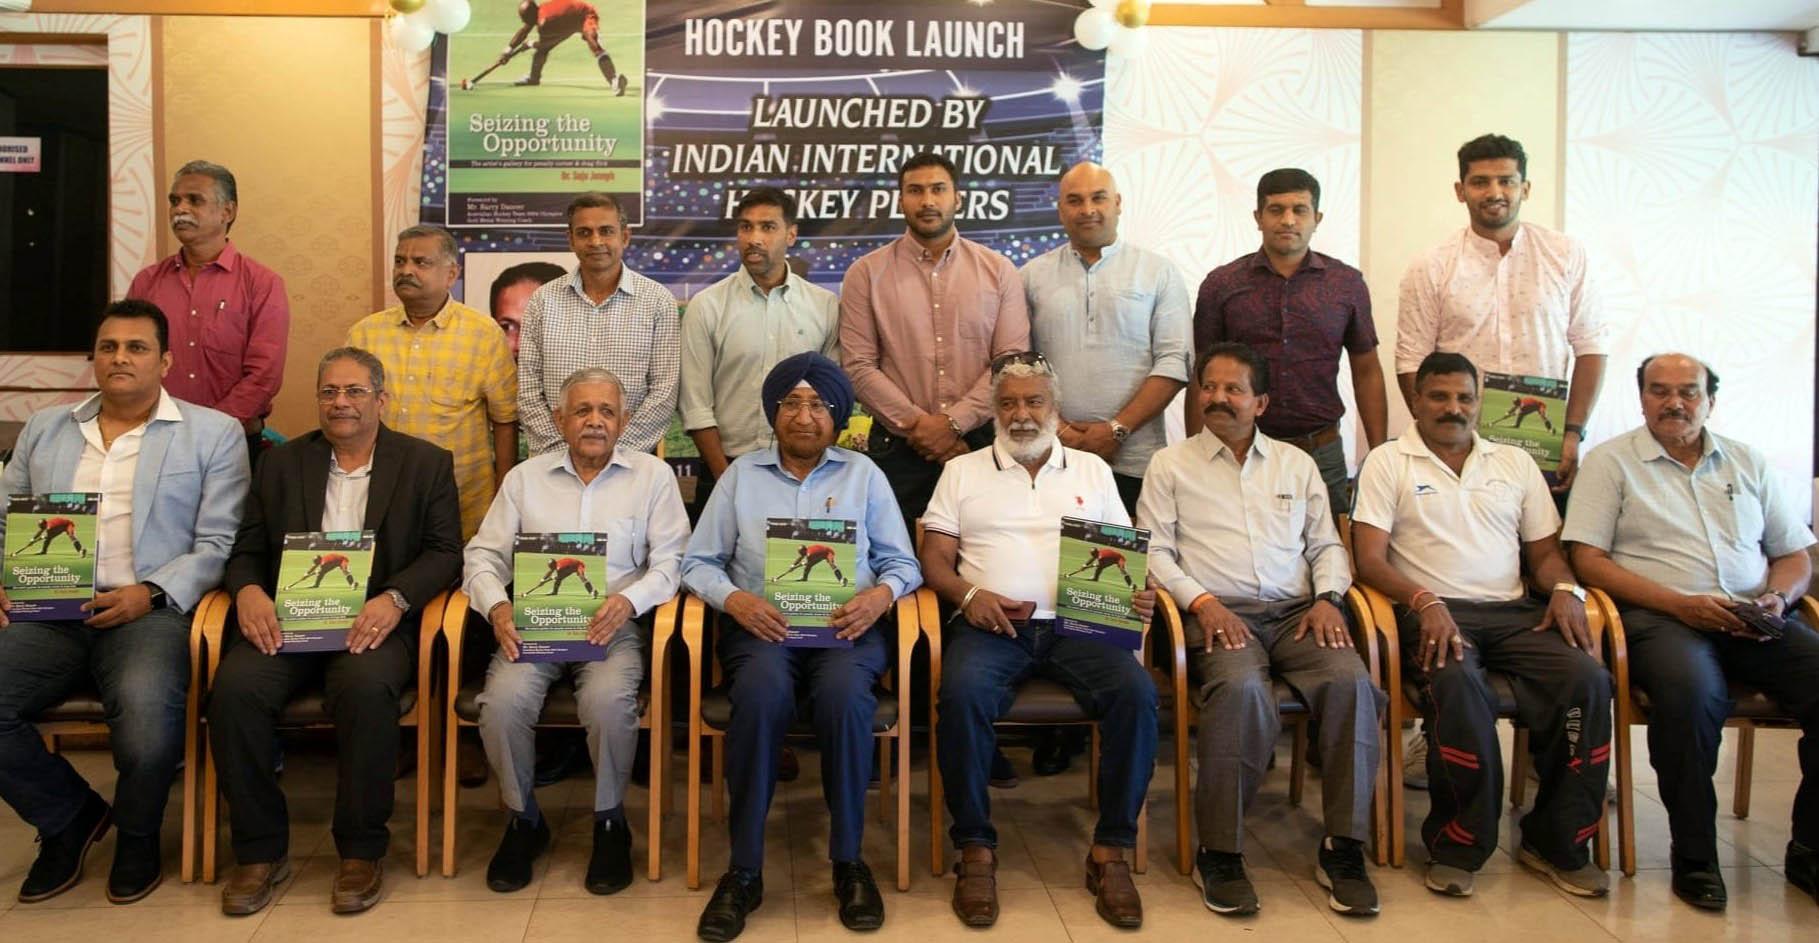 Book launch in Bengaluru